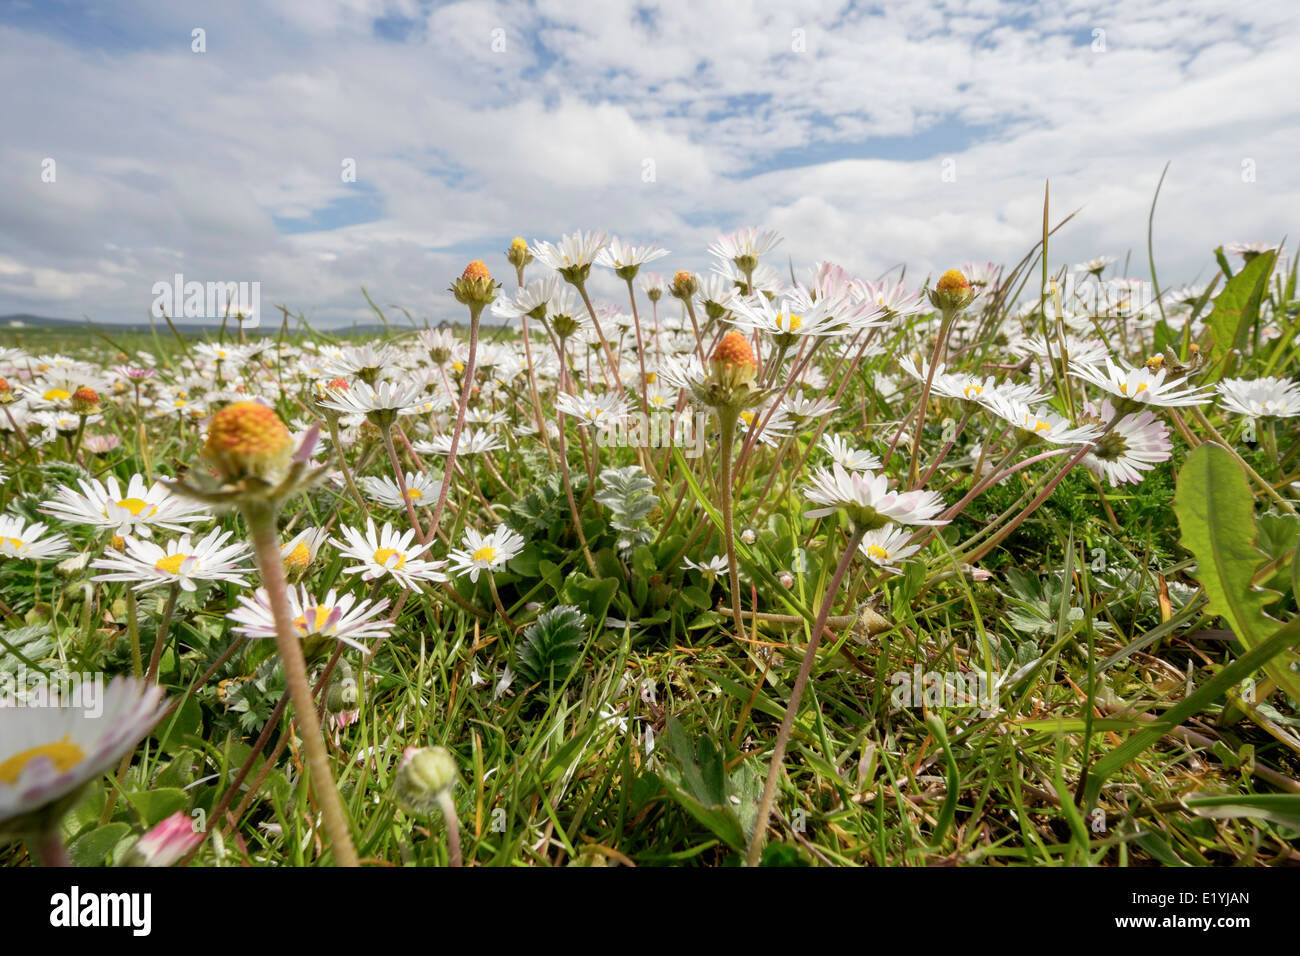 Low angle view of Daisies poussant dans les prairies de l'été "machair" écossais de fleurs sauvages. North Uist Western Isles Hébrides extérieures en Écosse Royaume-Uni Grande-Bretagne Banque D'Images